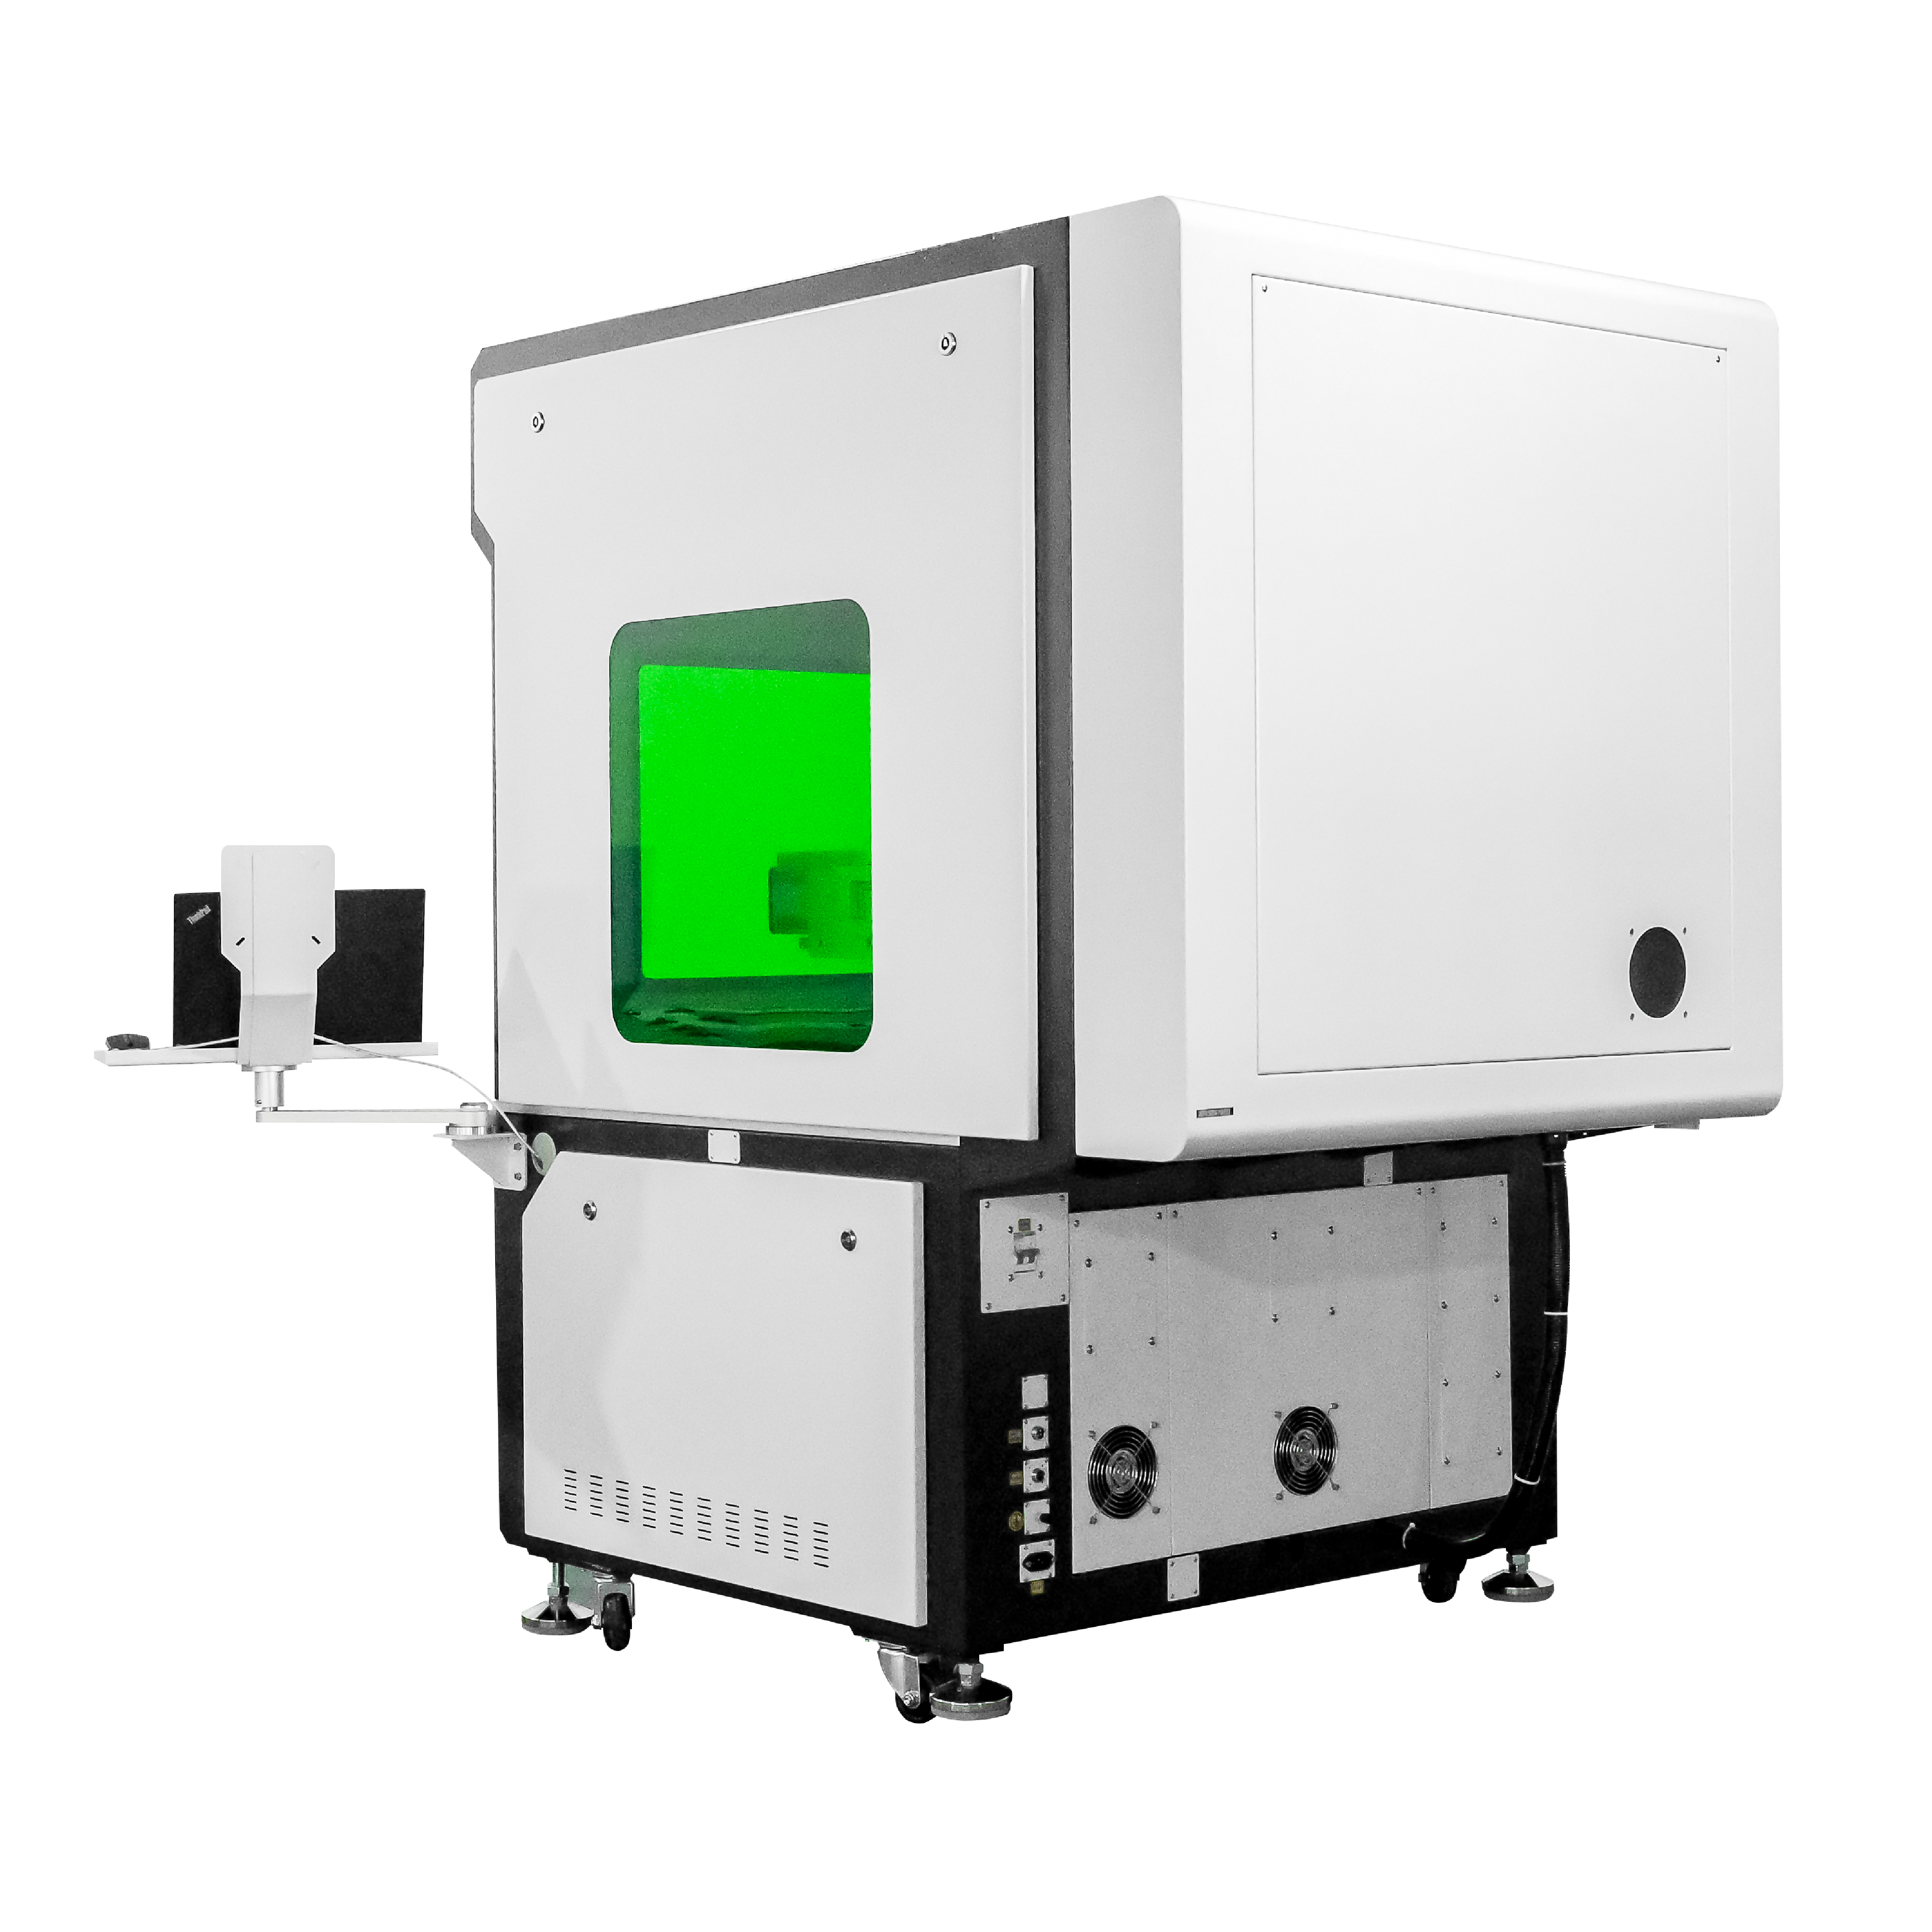 800 * 800 mm 1000 * 100 mm Fiber Mopa Lasermarkiermaschine zum Gravieren von großflächigen / Laserspleißmarkierungen